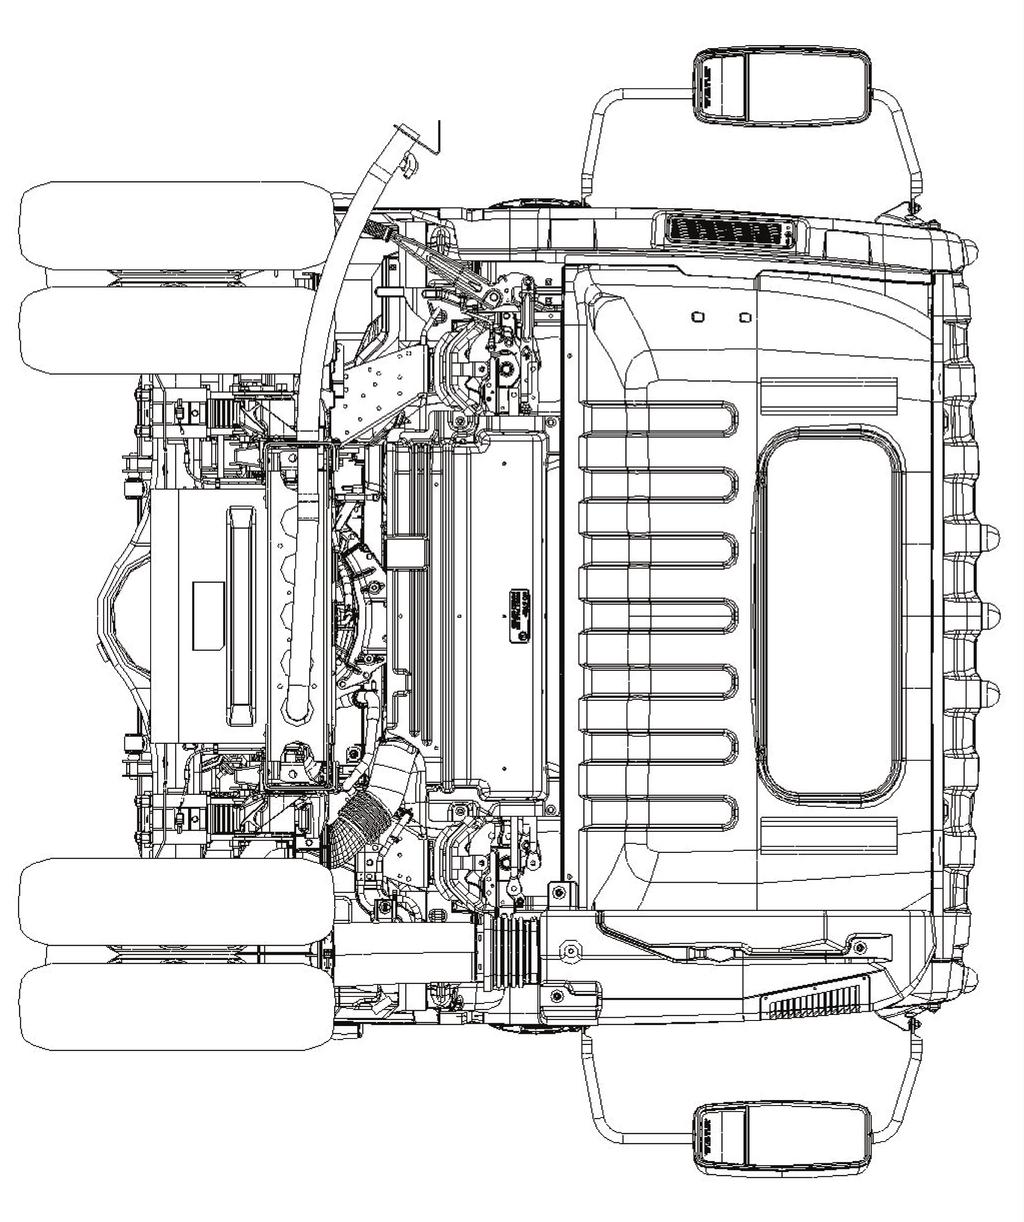 2016 Isuzu Truck Rear View Fuel Fill Dimension: